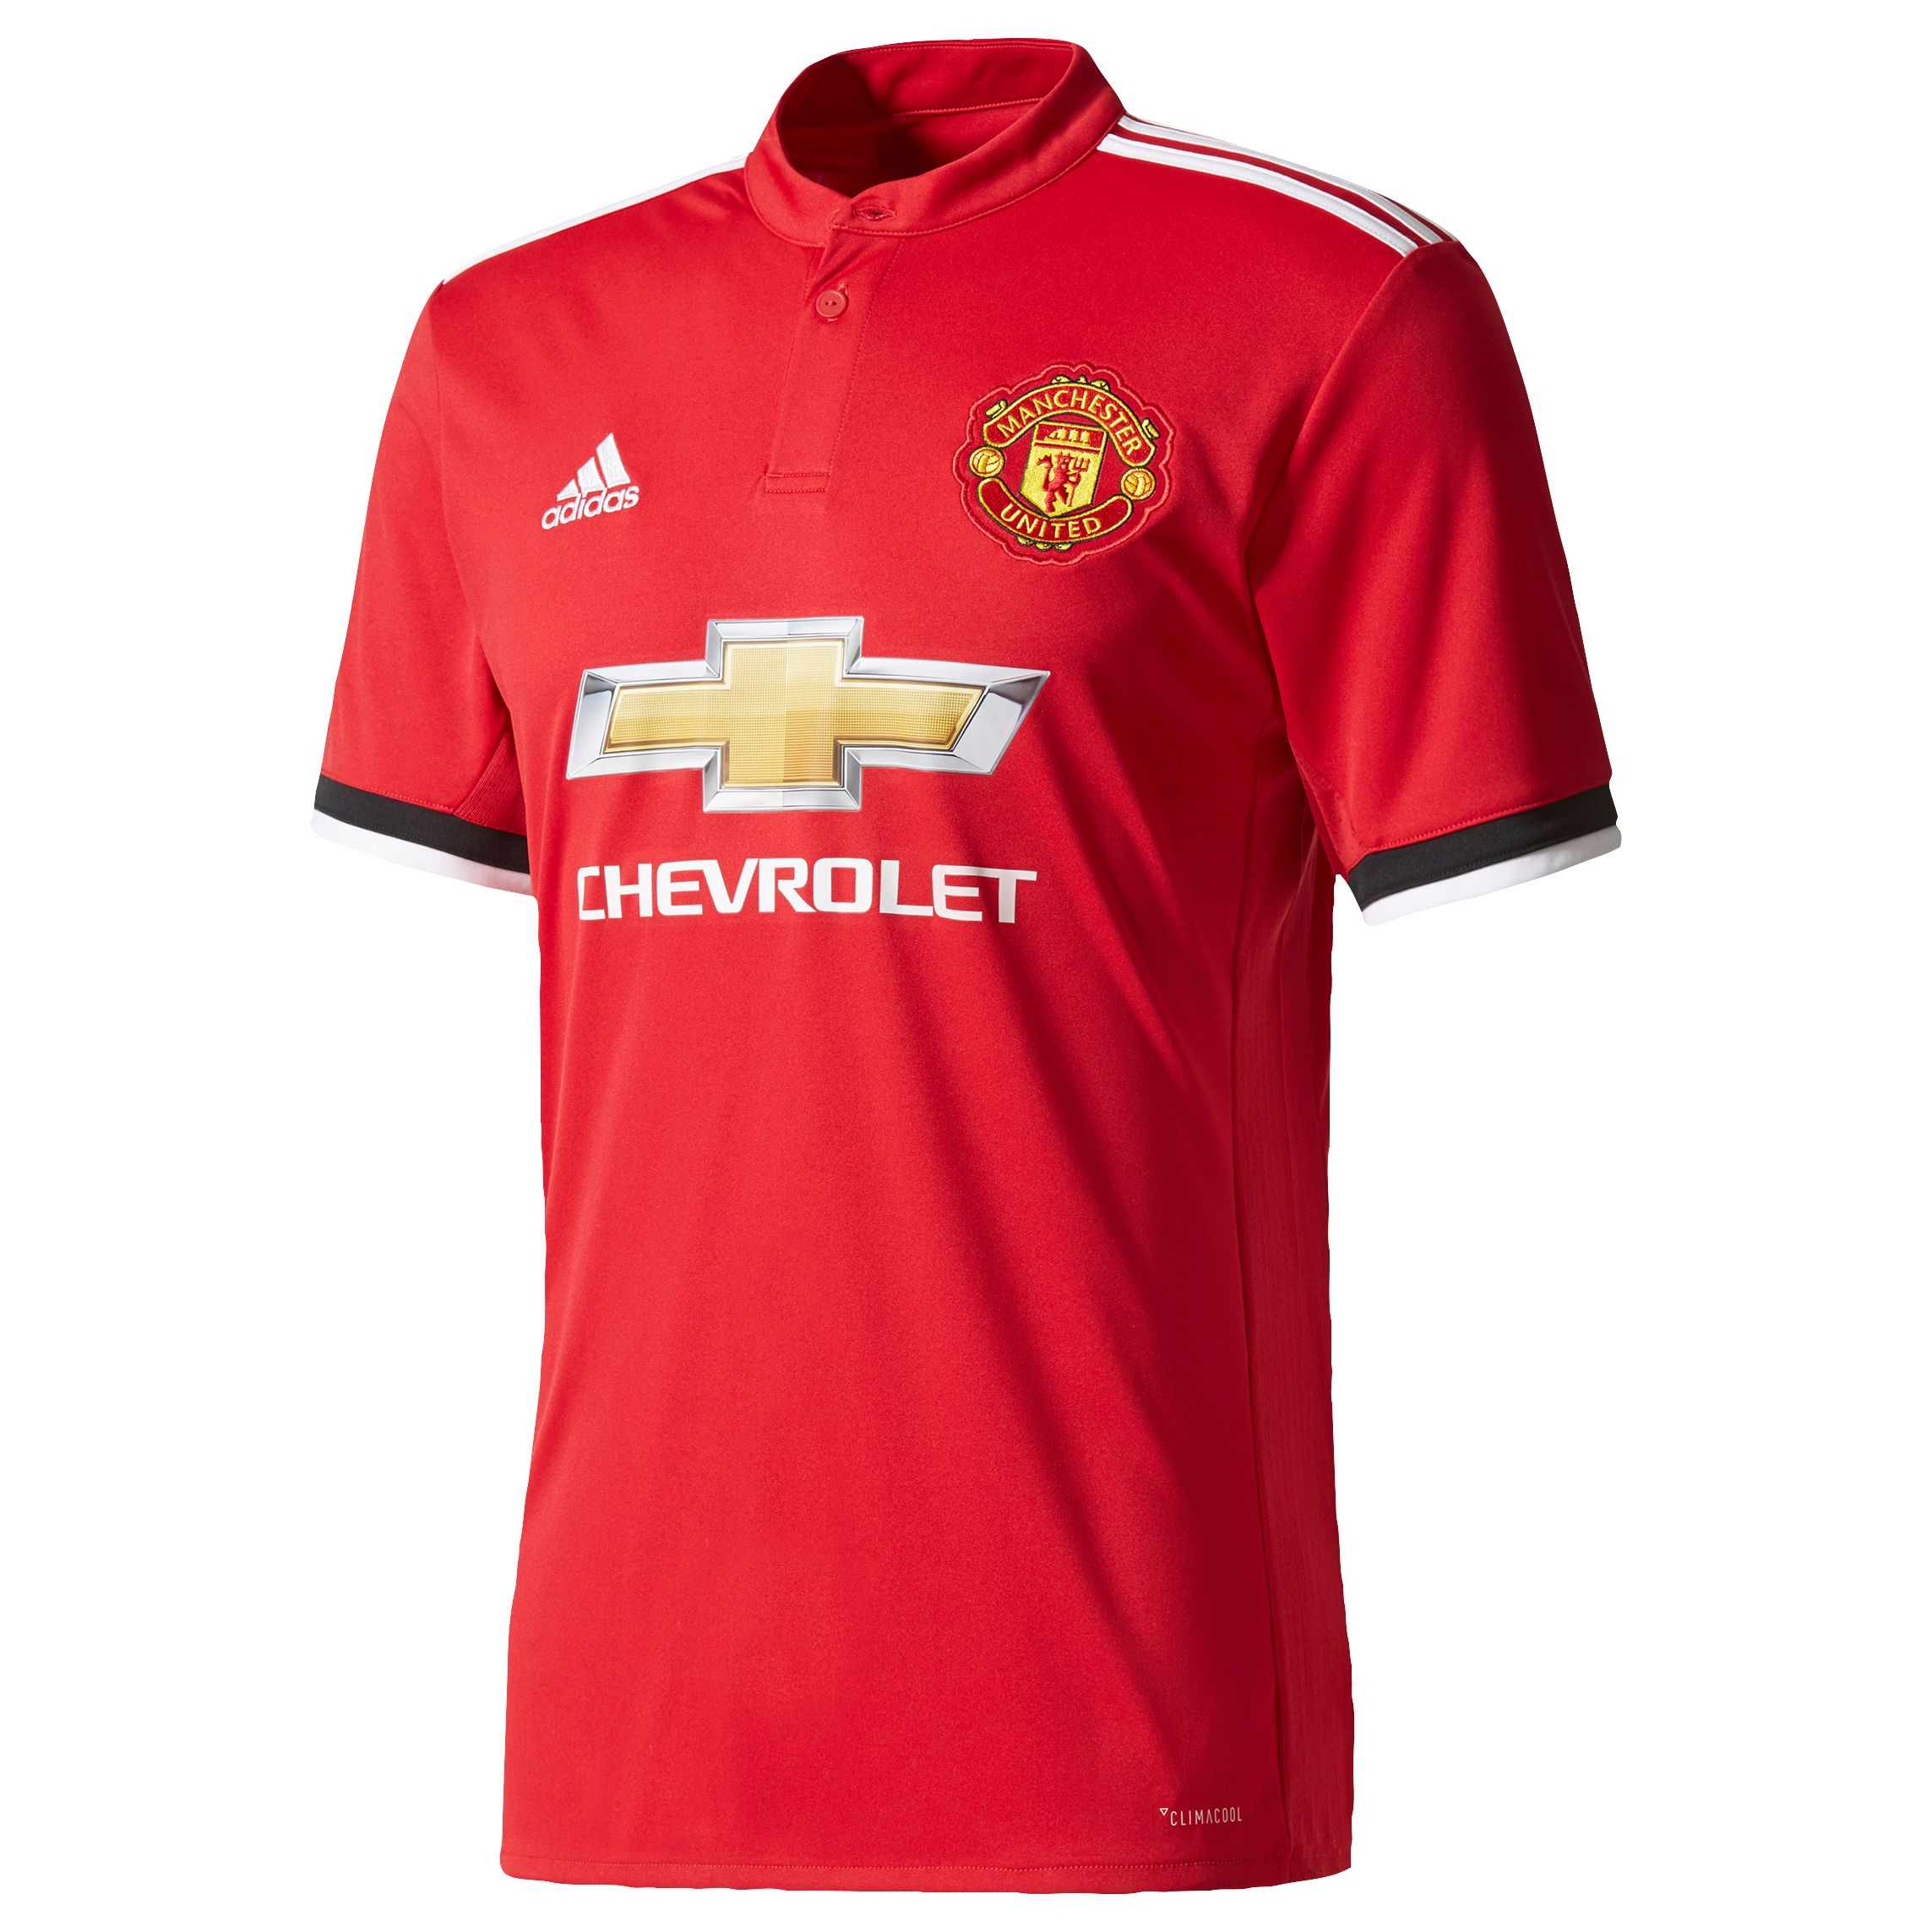 Praten tegen Ondergedompeld Onzeker adidas Manchester United F.C. Home Replica Football Shirt, Red